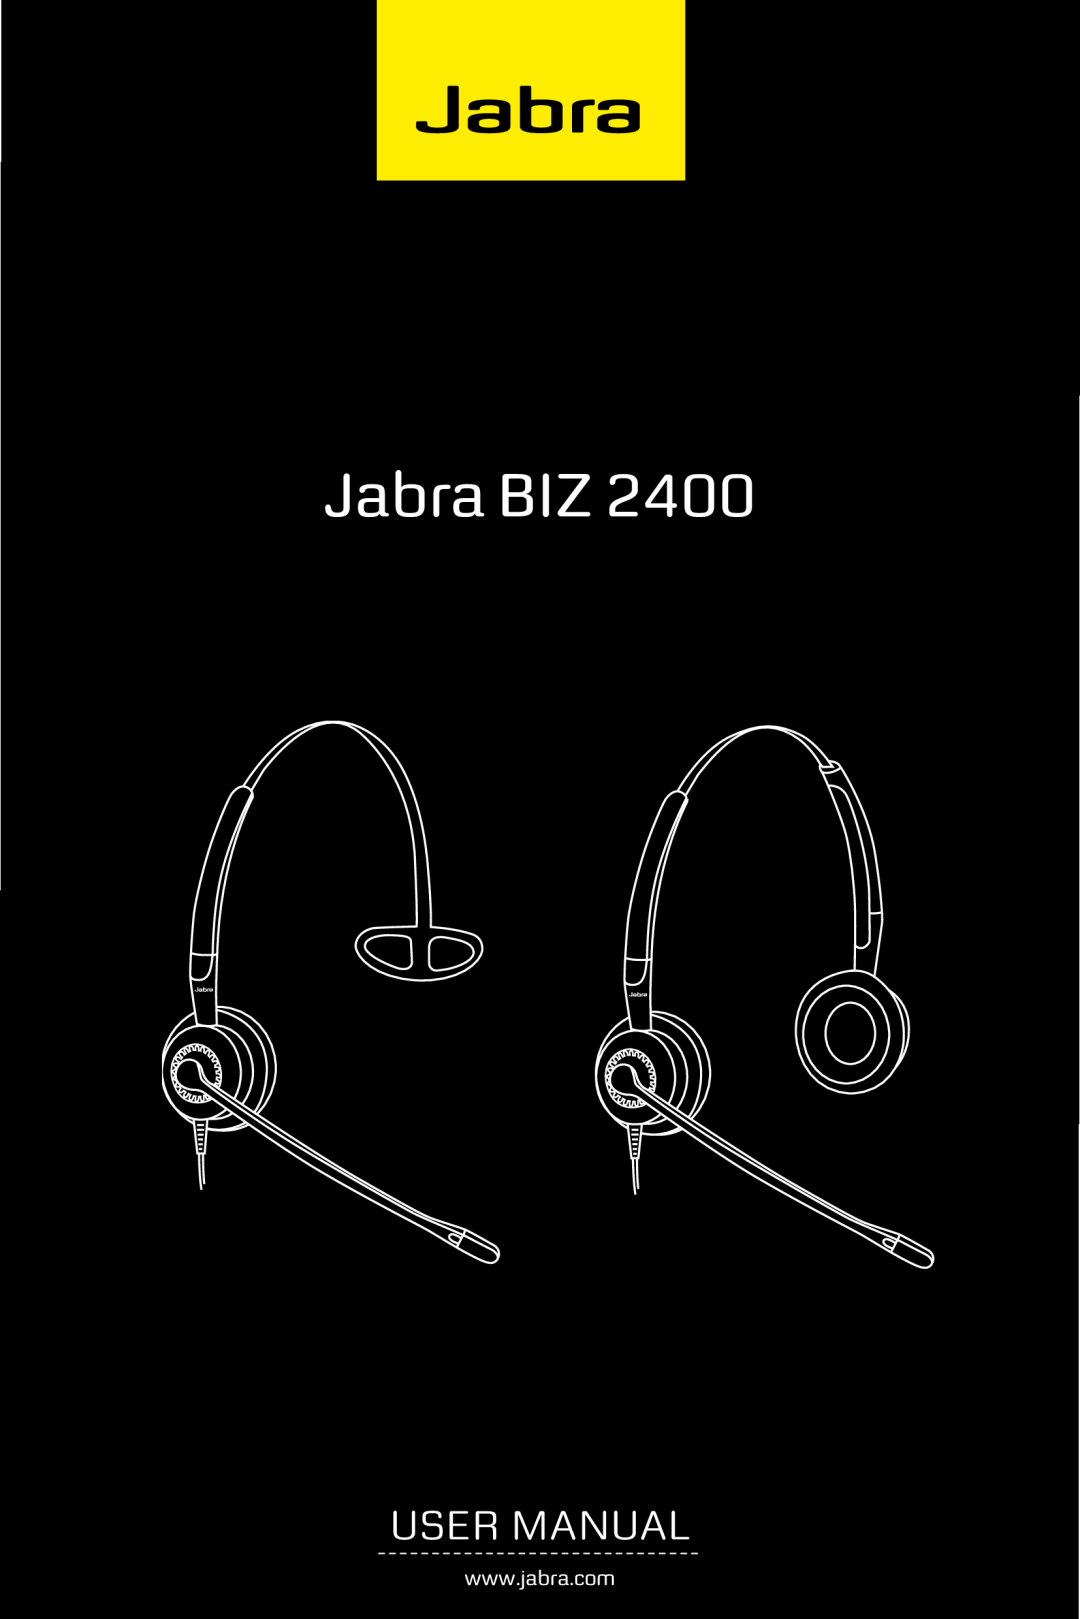 Jabra 2400 user manual Jabra BIZ 